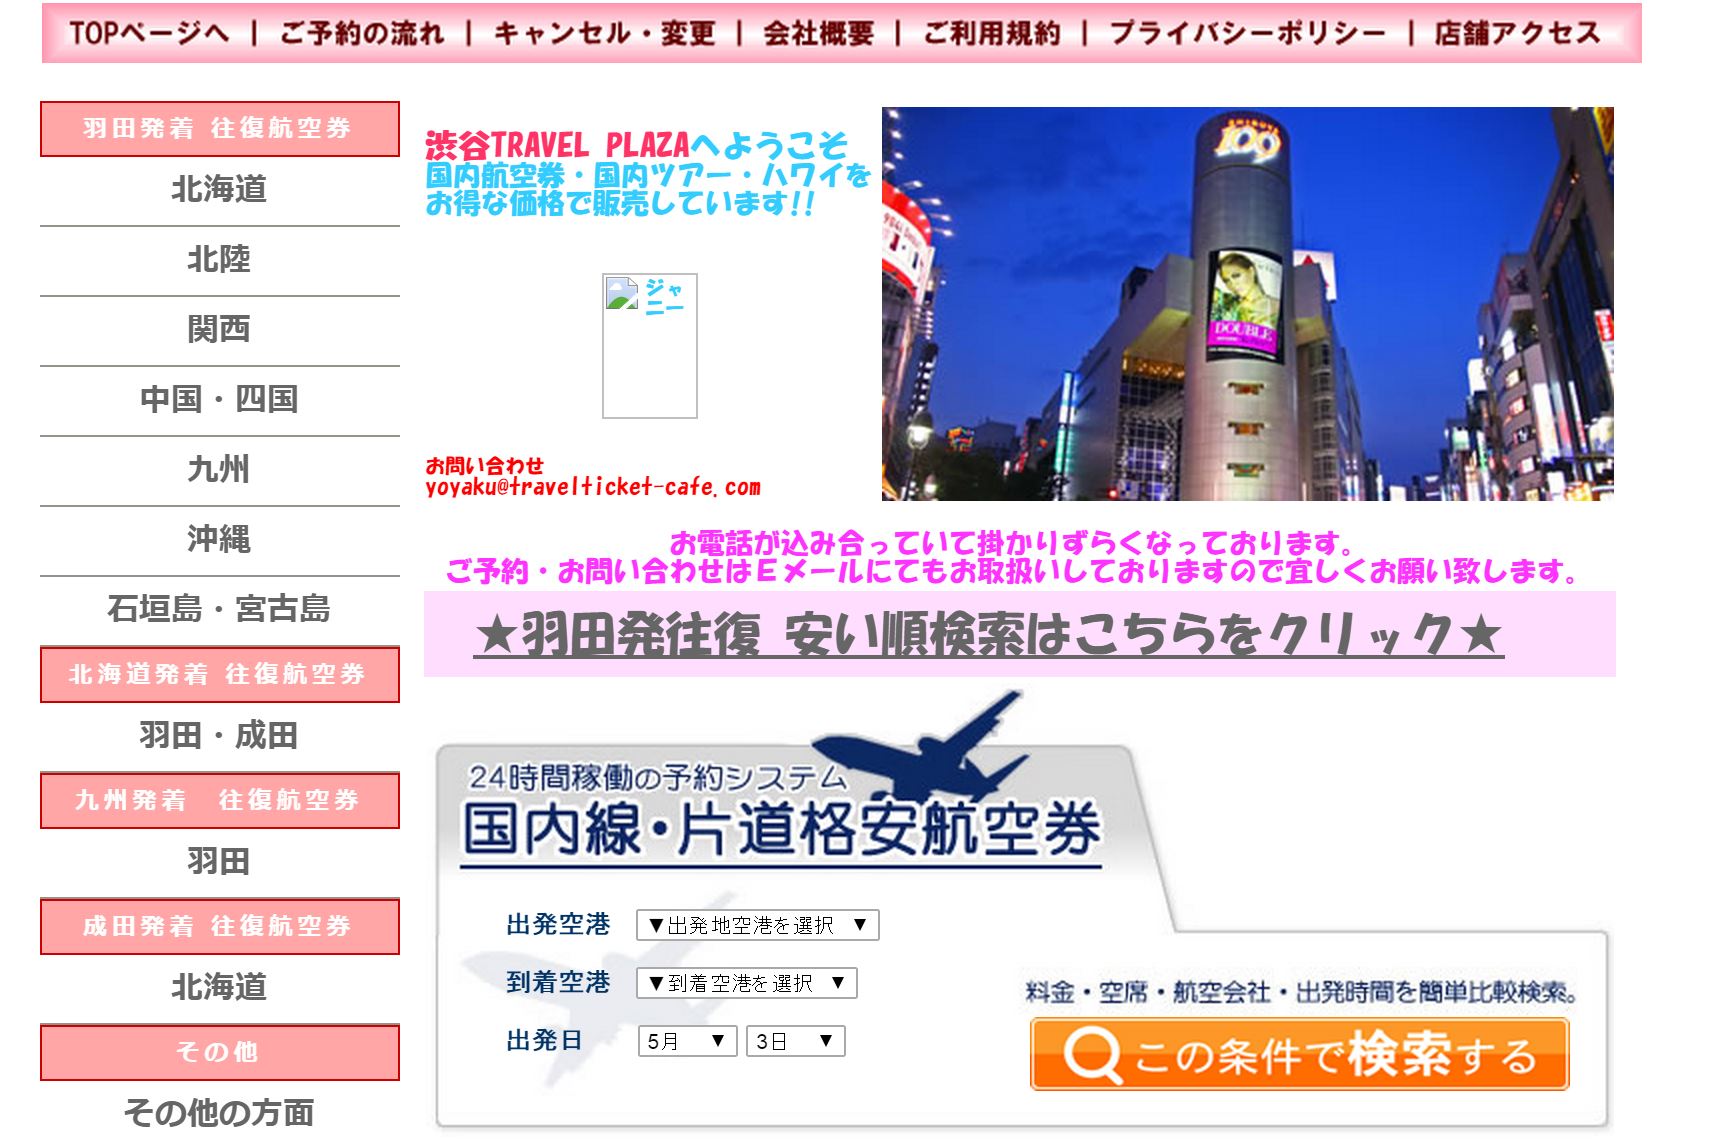 旅行業3種「渋谷トラベルプラザ」が事業廃止（同社の全文掲載）、東京都が消費者に対応呼びかけ